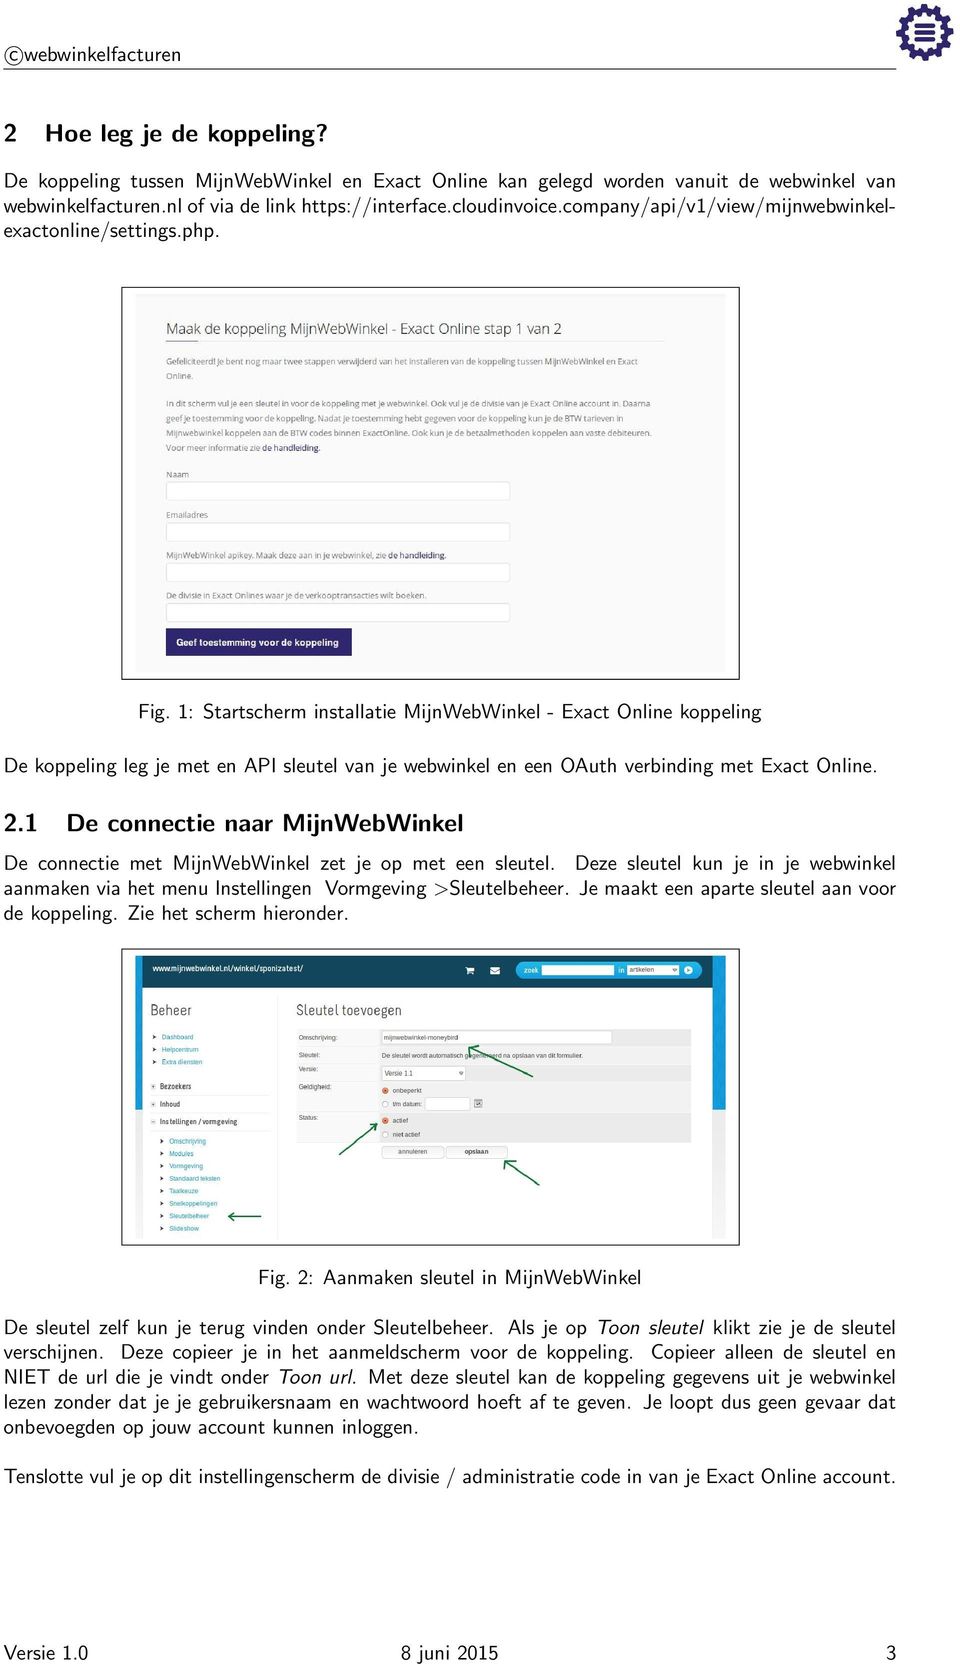 1: Startscherm installatie MijnWebWinkel - Exact Online koppeling De koppeling leg je met en API sleutel van je webwinkel en een OAuth verbinding met Exact Online. 2.